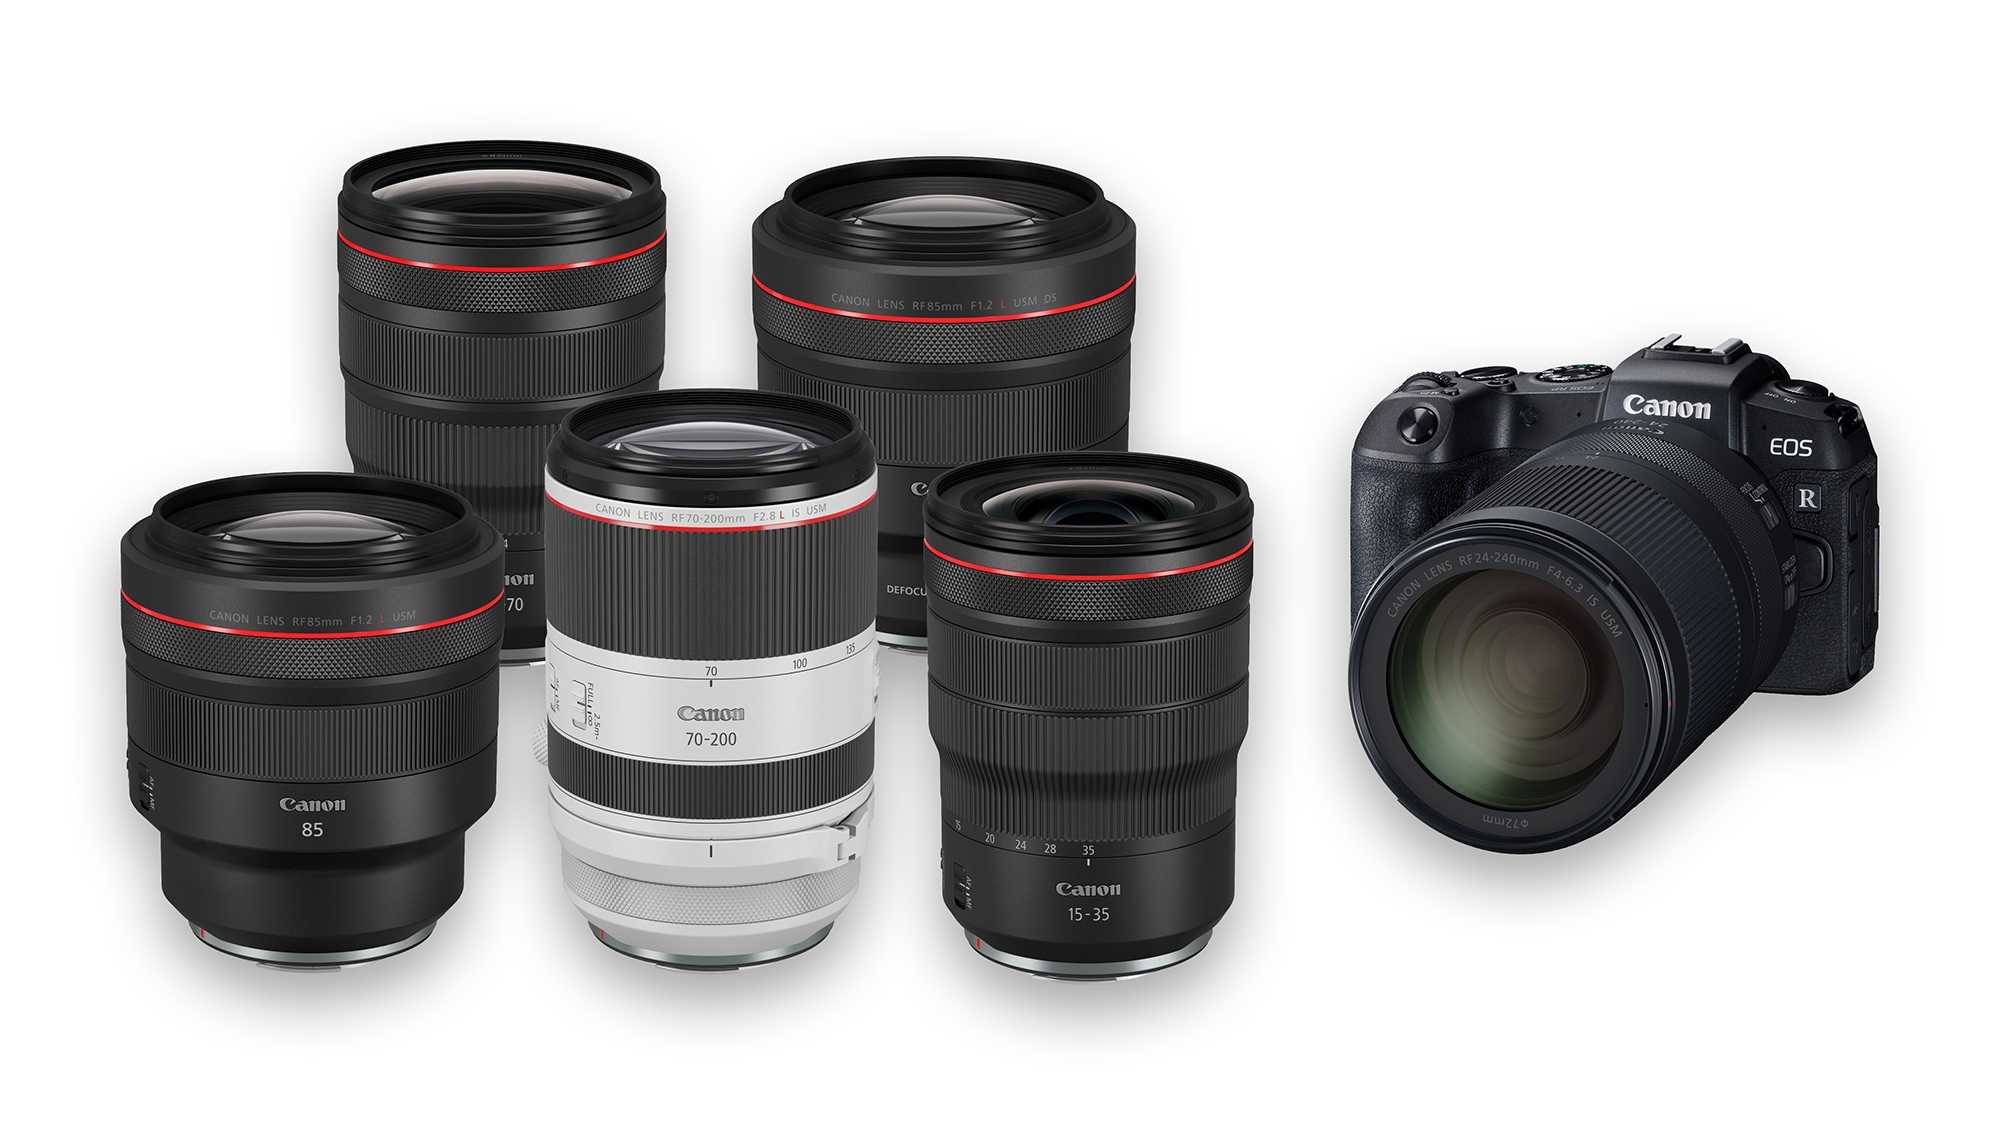 Nikon представляет новую скоростную профессиональную зеркалку nikon d3s // новости фотоиндустрии // клуб фотопутешественников fototraveller